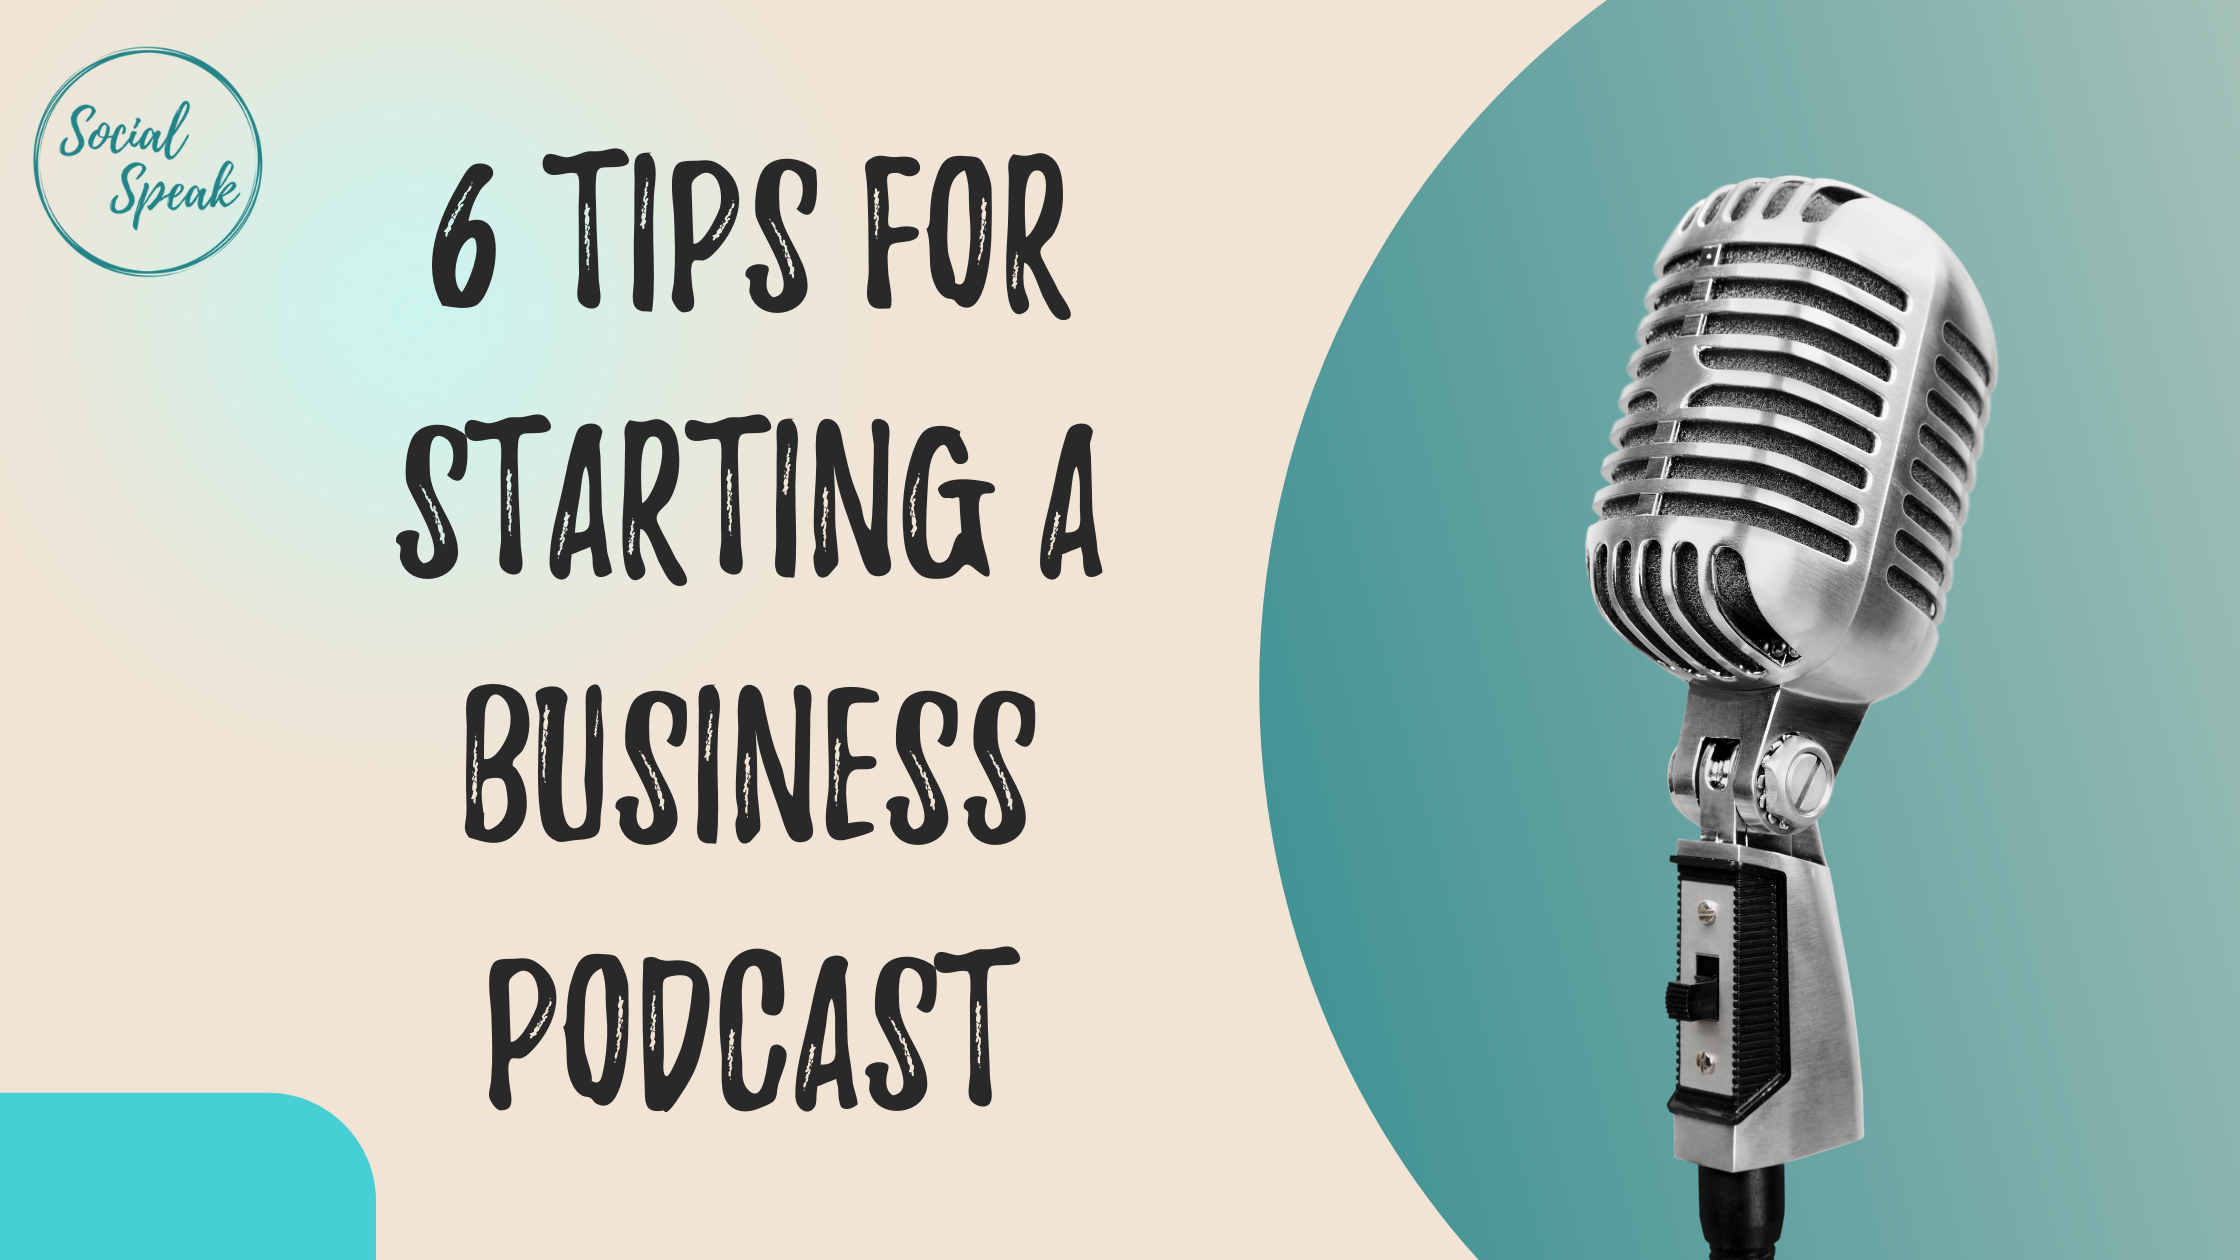 6 Tips for Starting a Business Podcast | Social Speak Network Social ...